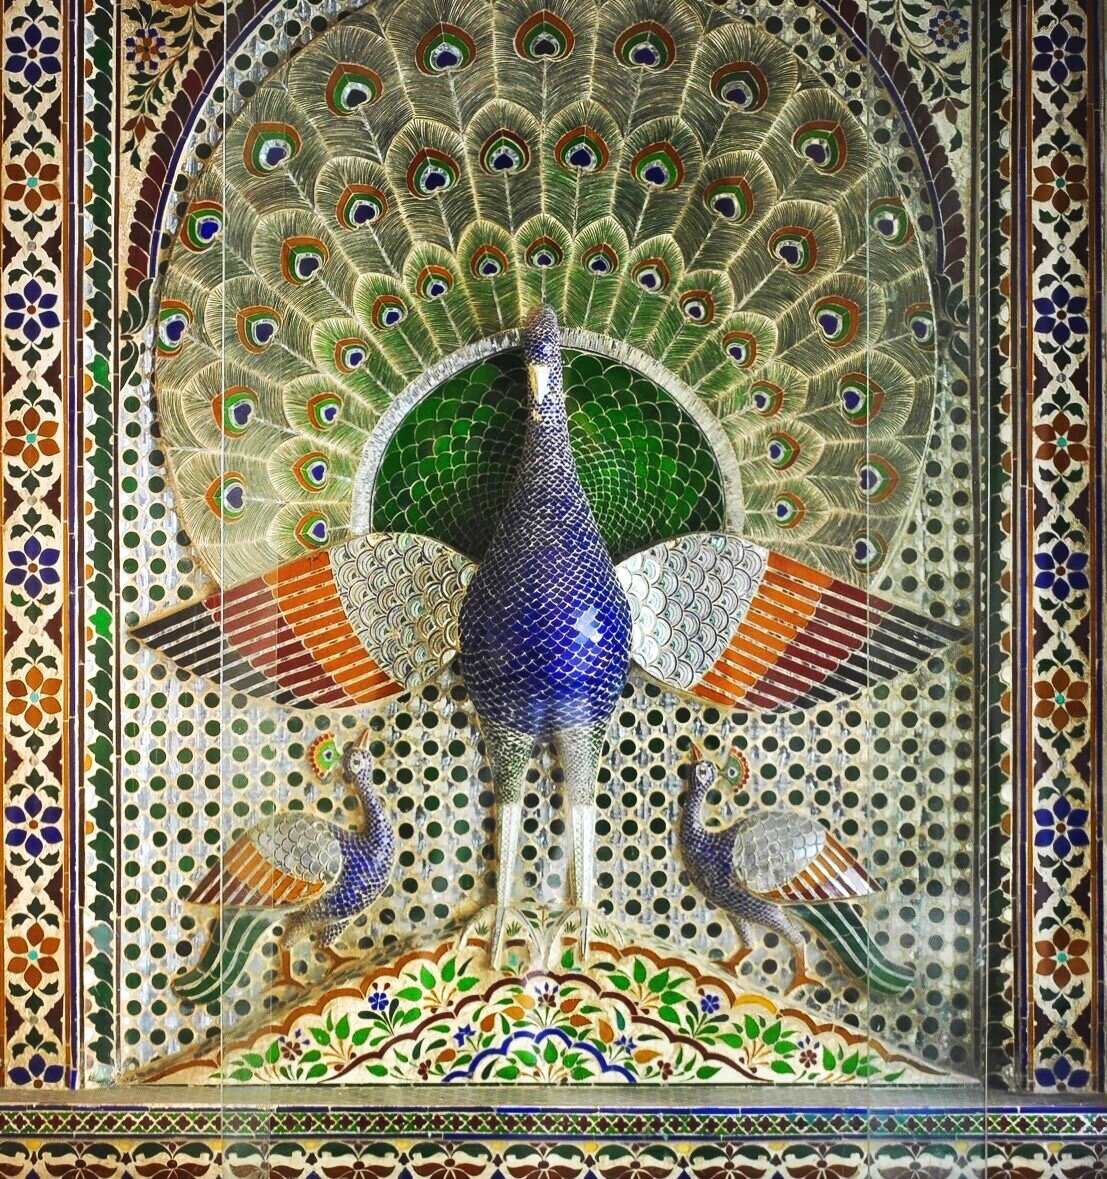 Peacock mosaic at Mor Chowk Udaipur City palace Rajasthan